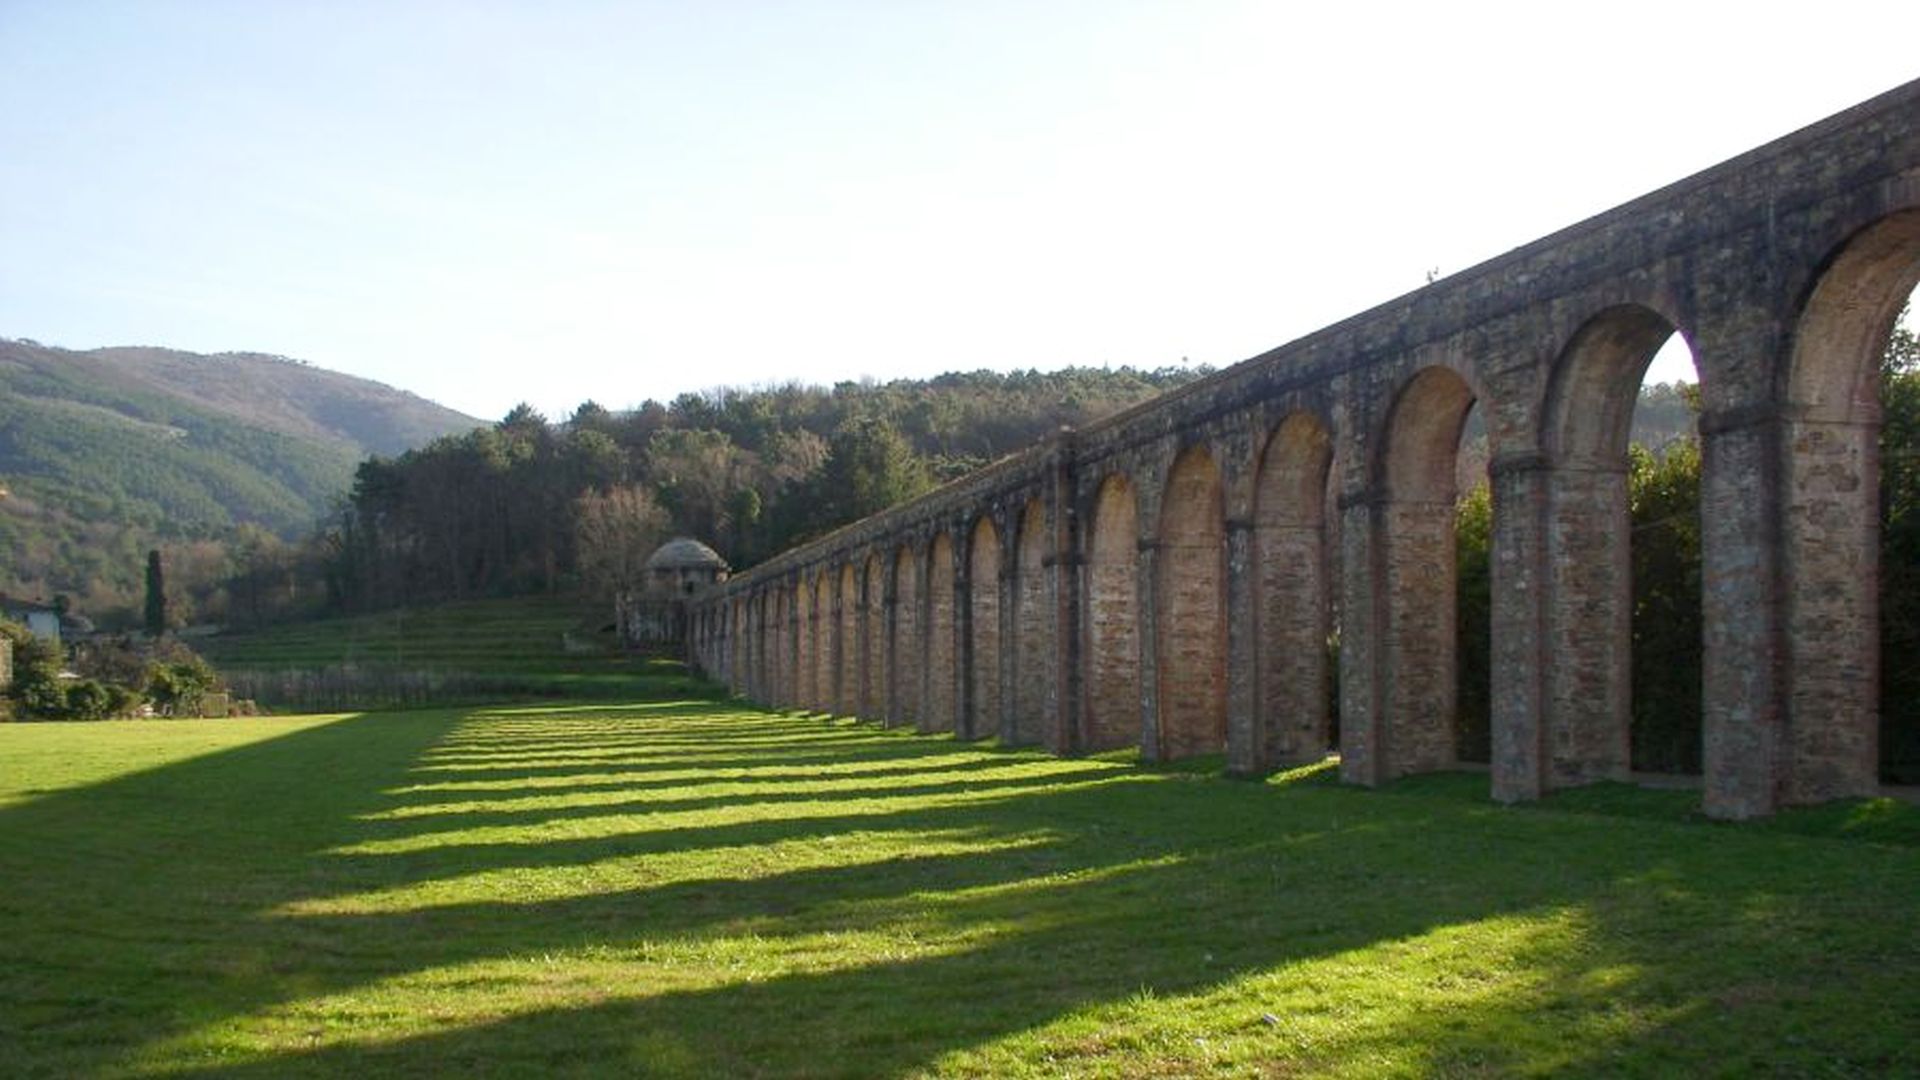 arcate dell'acquedotto Nottolini nei pressi del tempietto di Monte